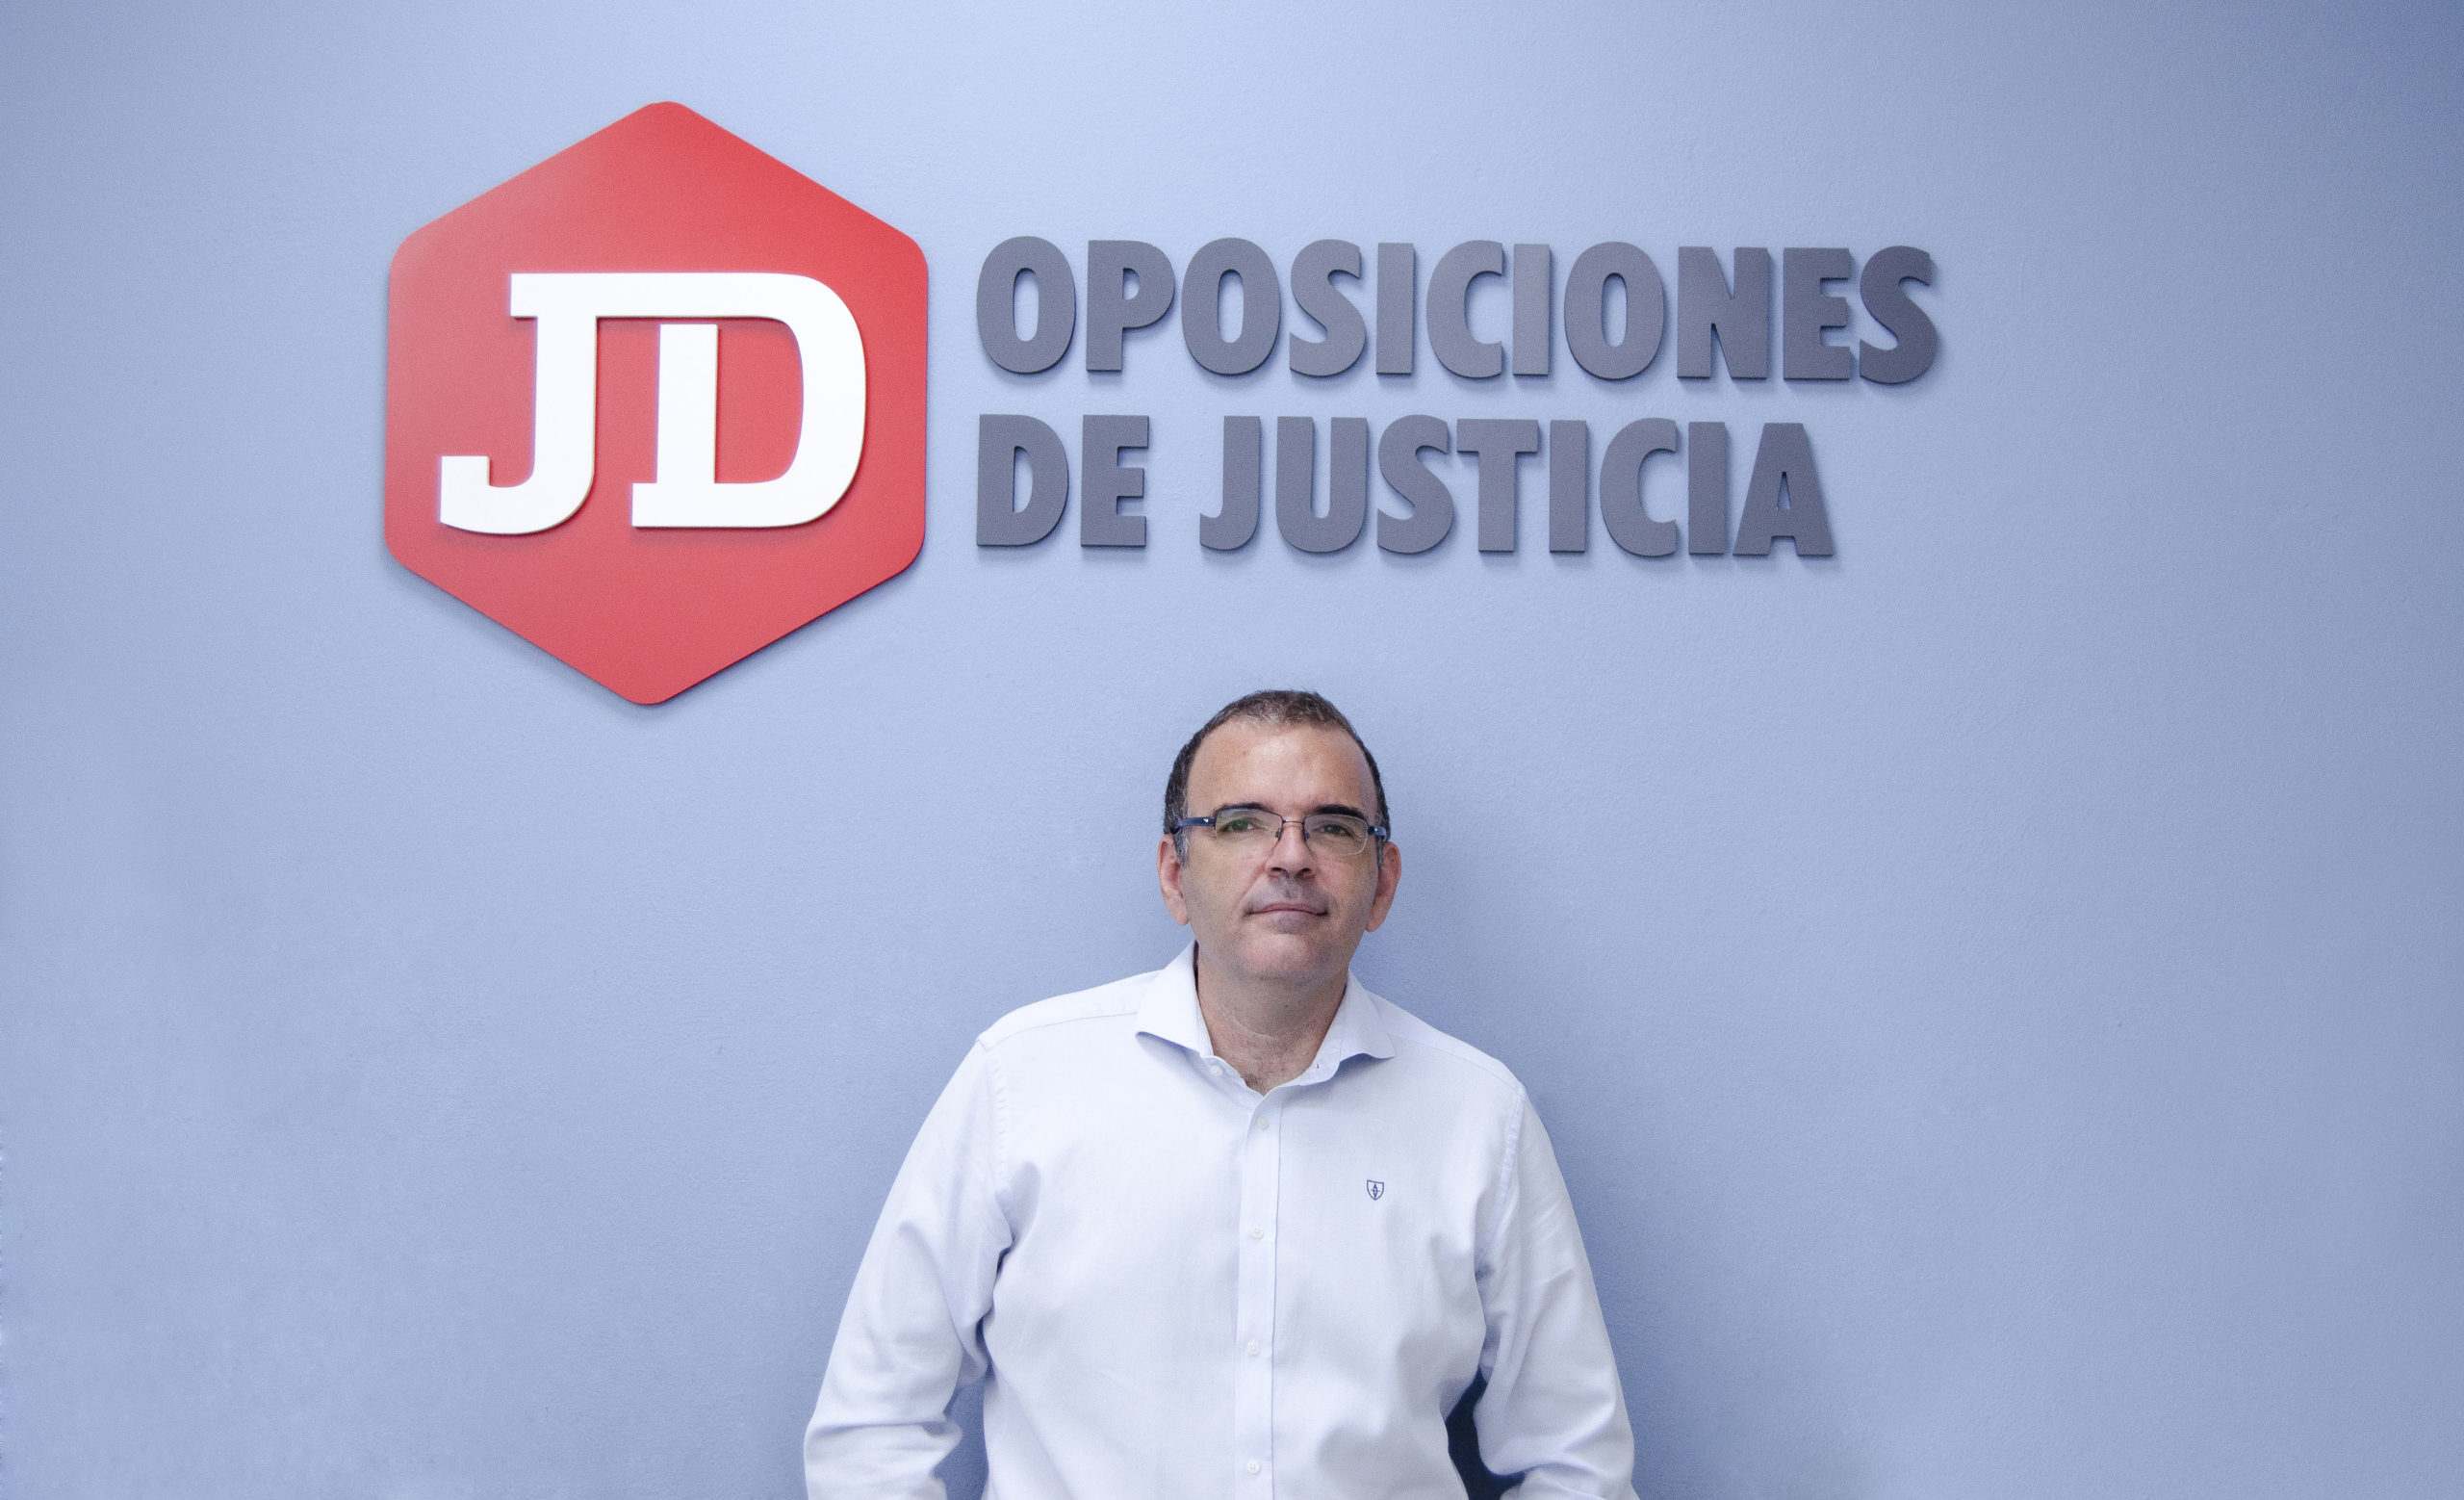 Juan David Granados, Director de formación de JD Oposiciones de Justicia